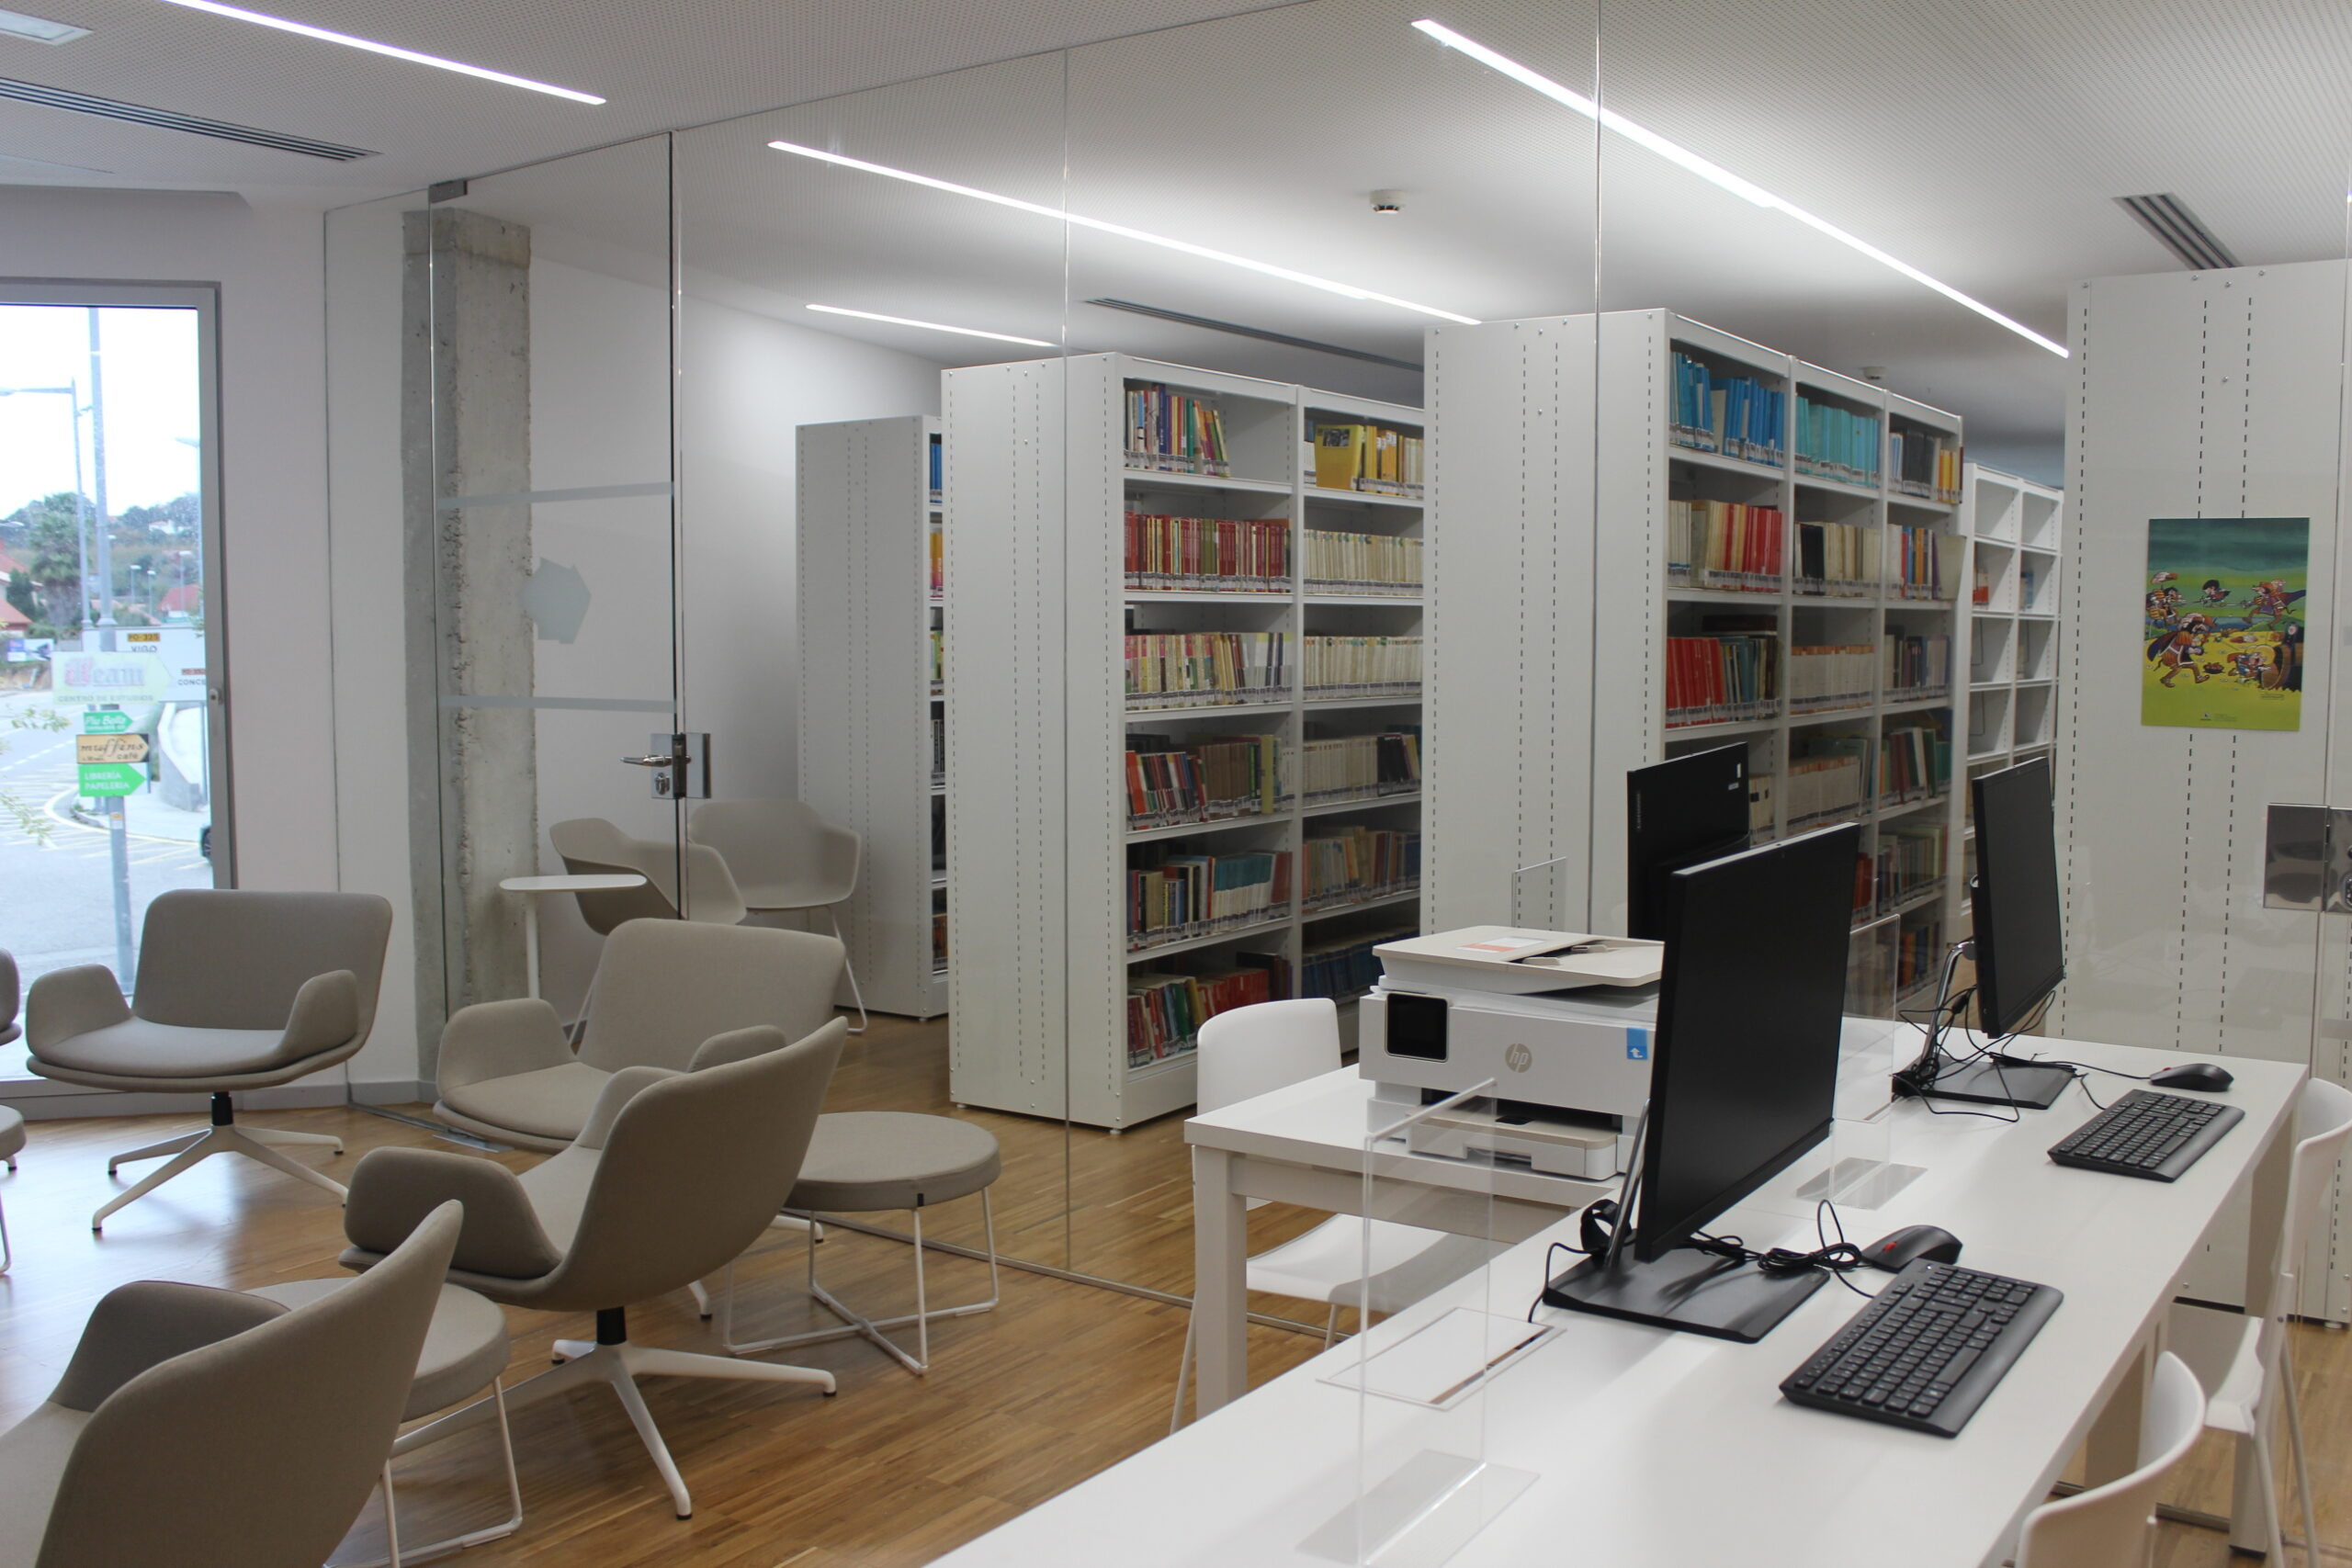 Nigrán abre a súa nova biblioteca